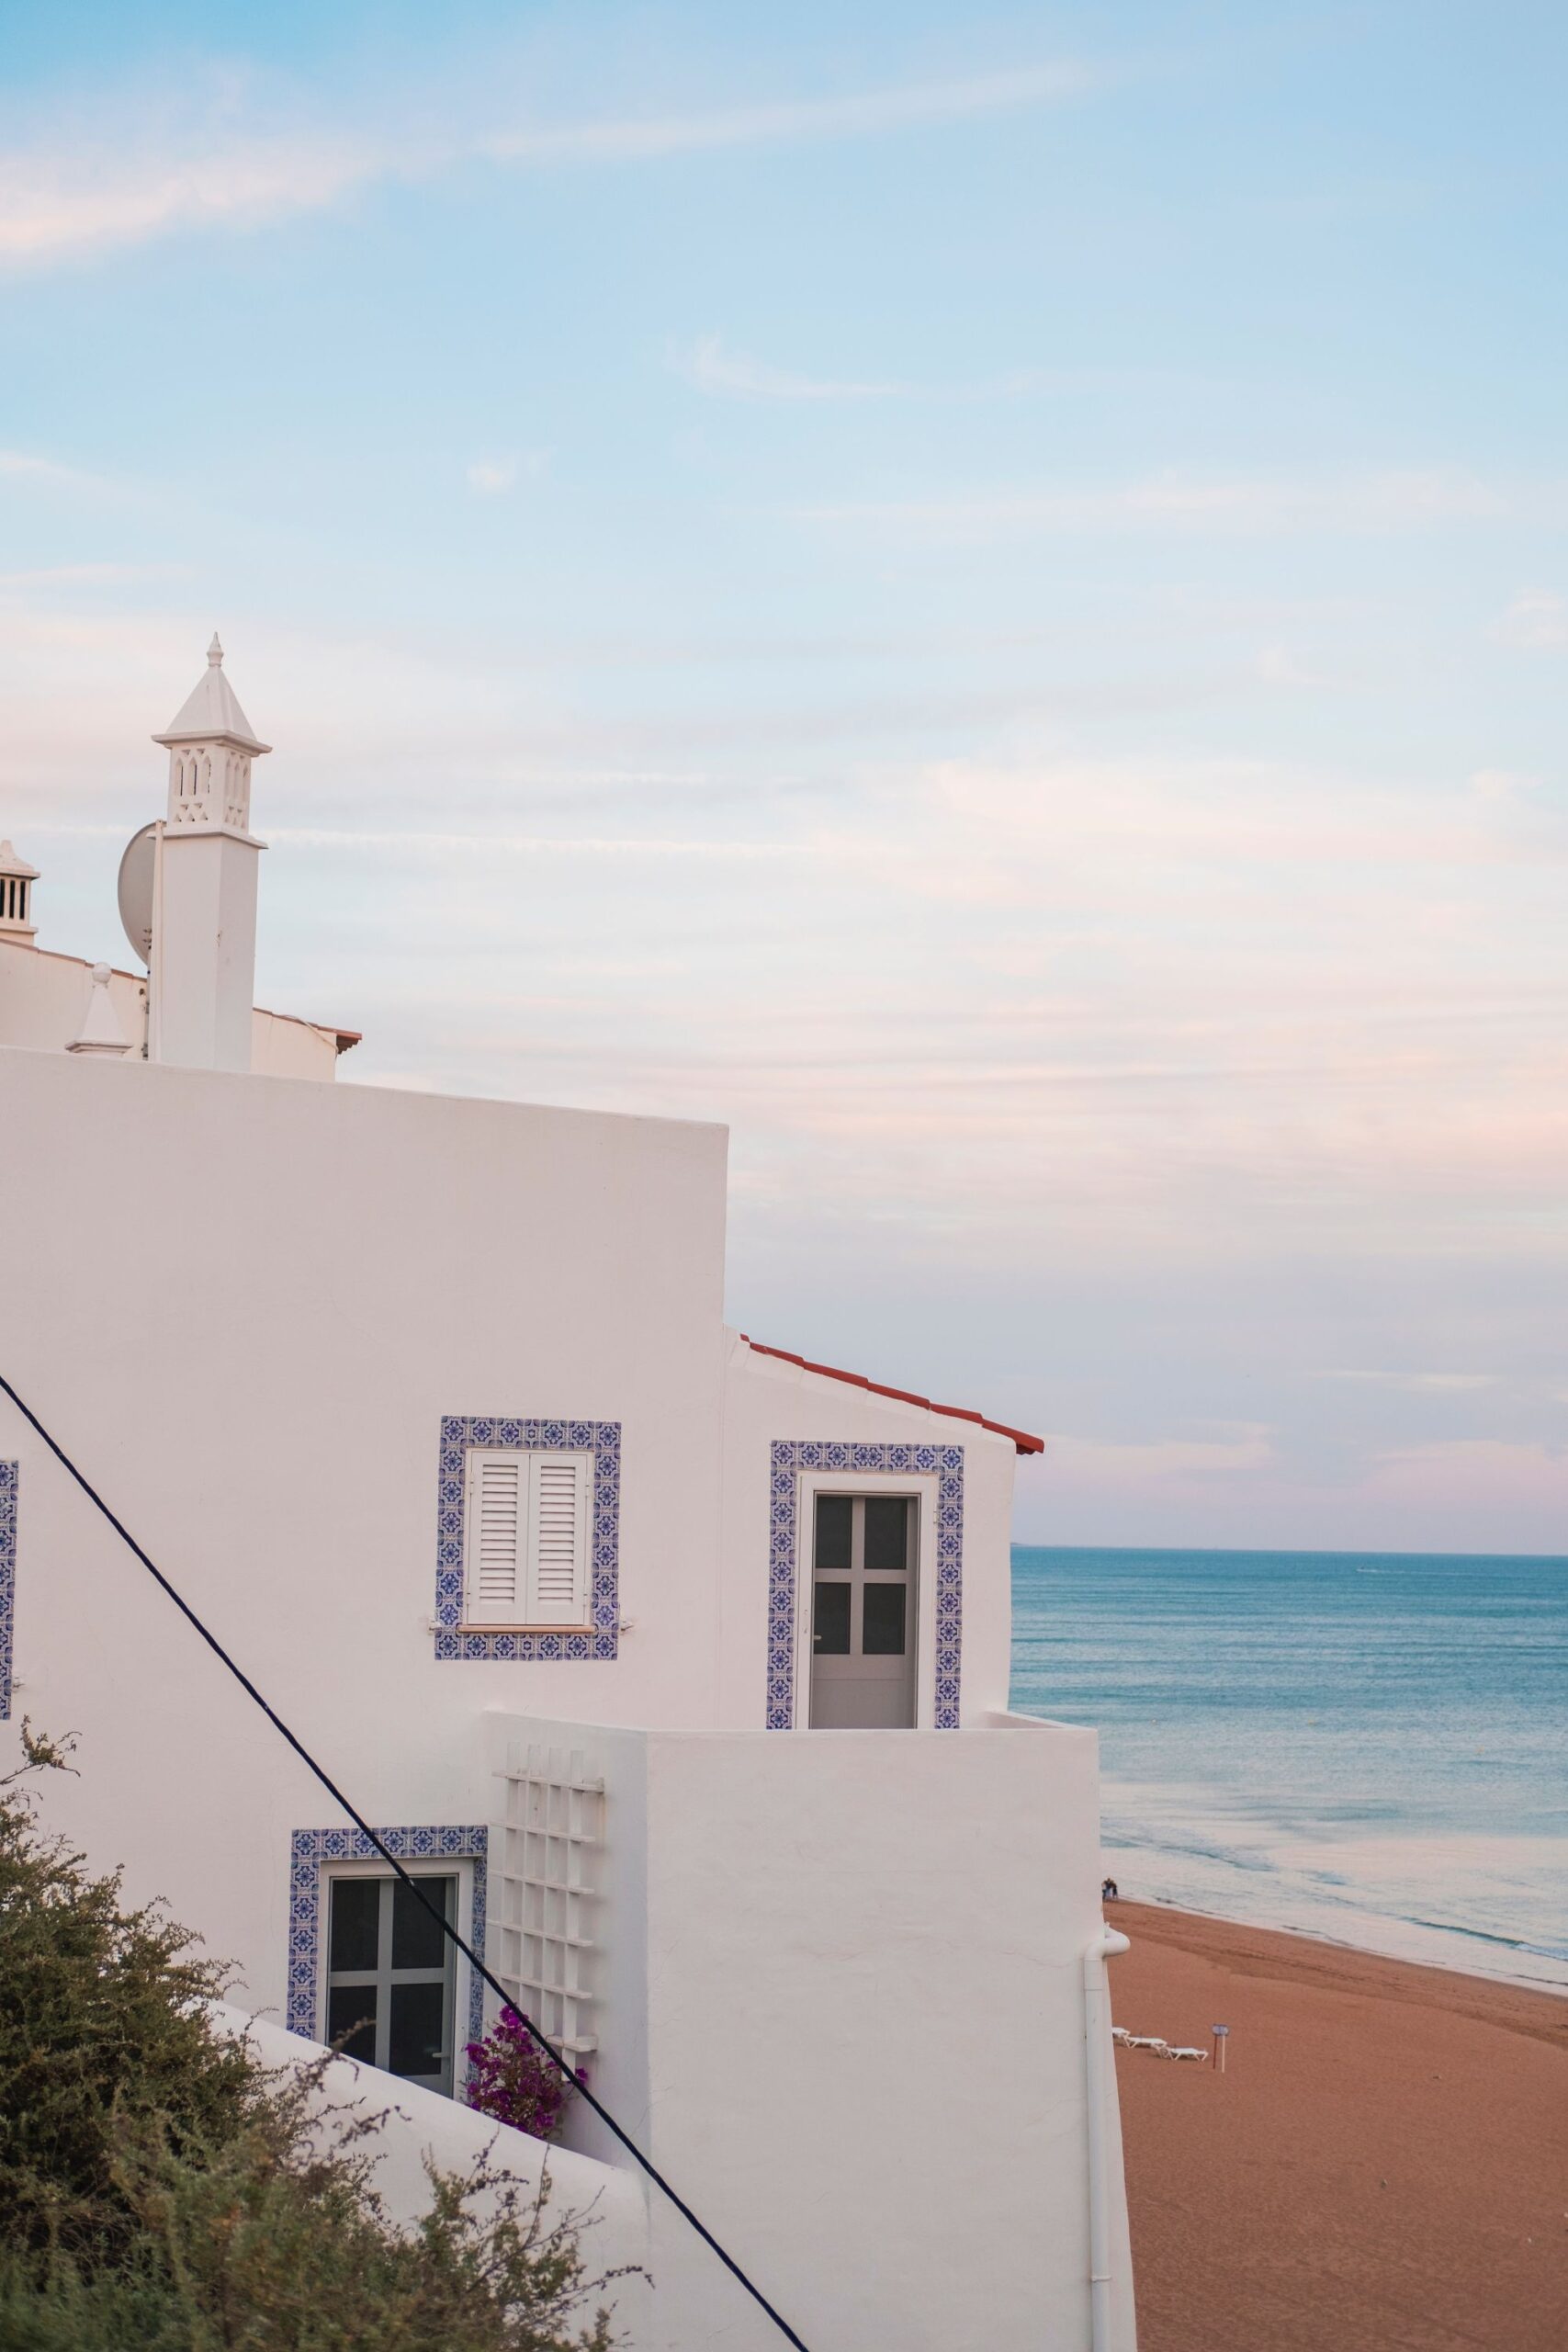 White houses in the Algarve, Portugal.